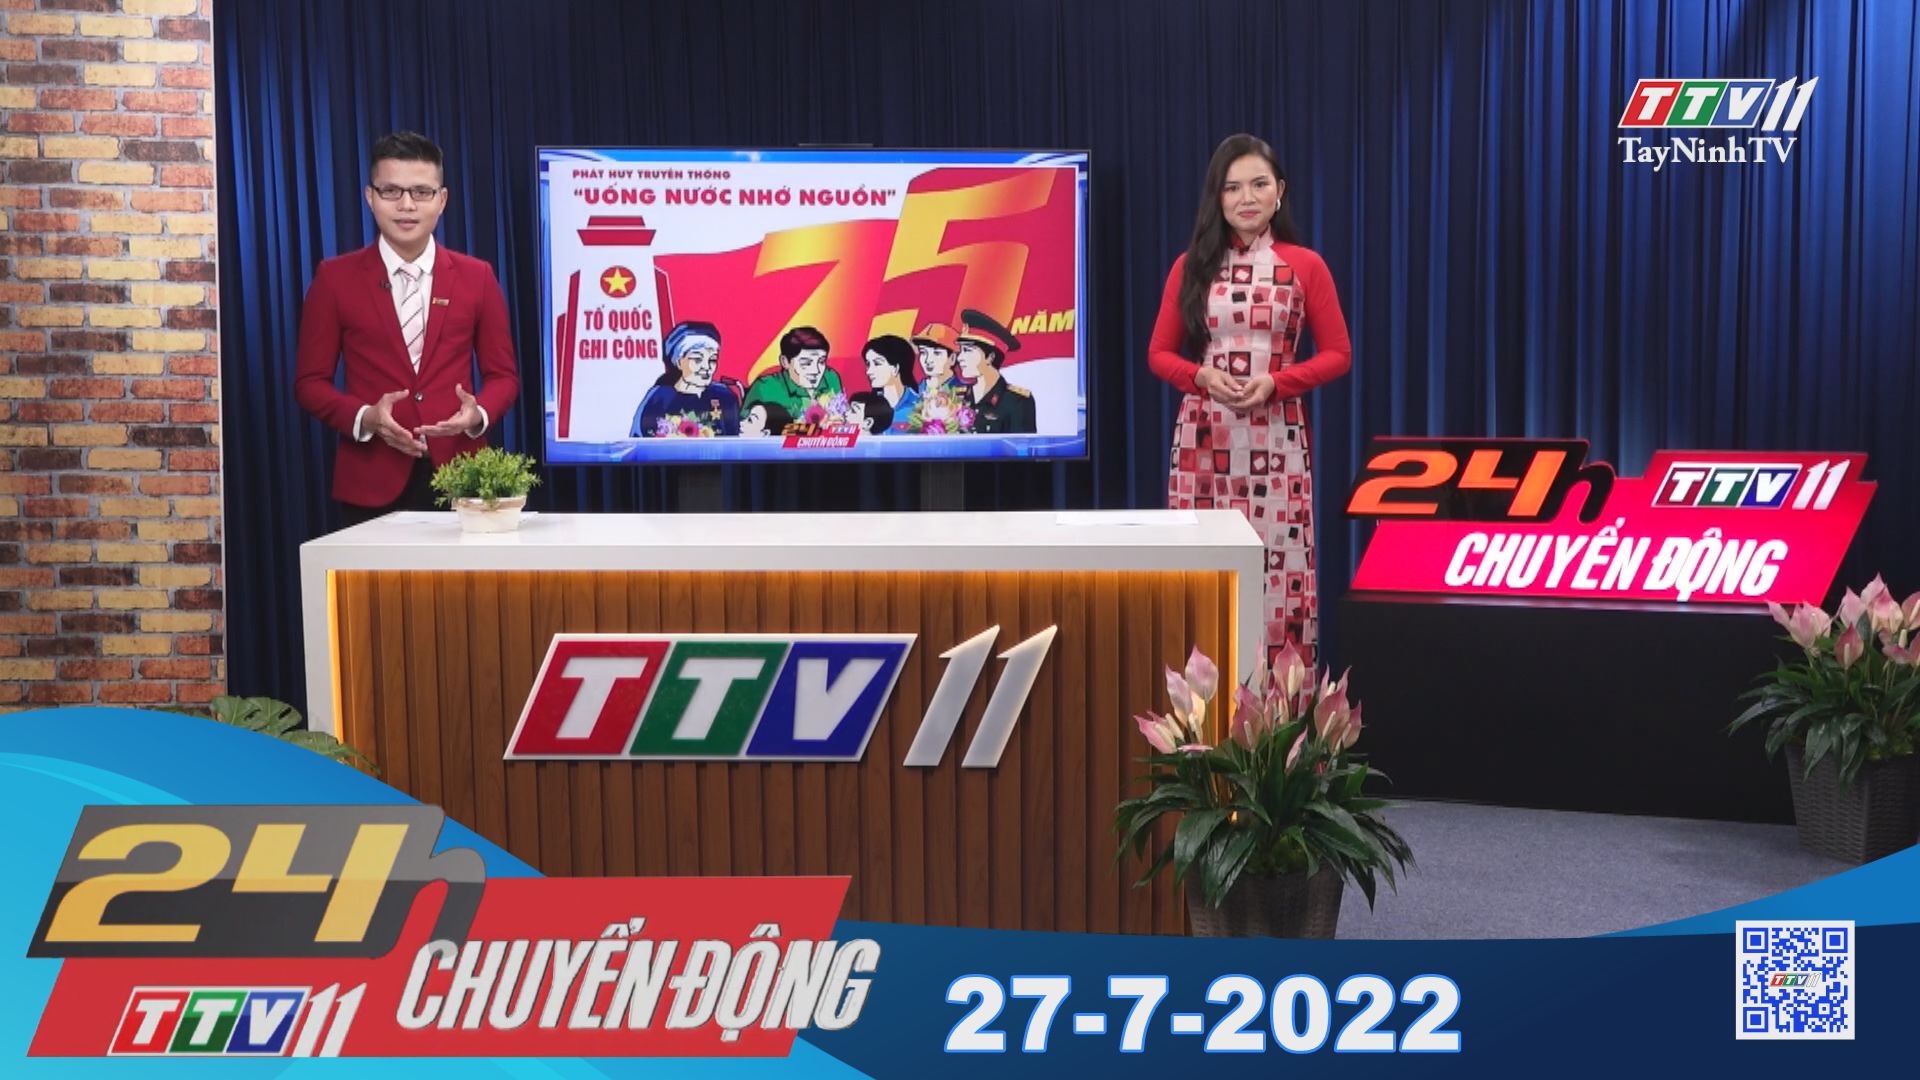 24h Chuyển động 27-7-2022 | Tin tức hôm nay | TayNinhTV